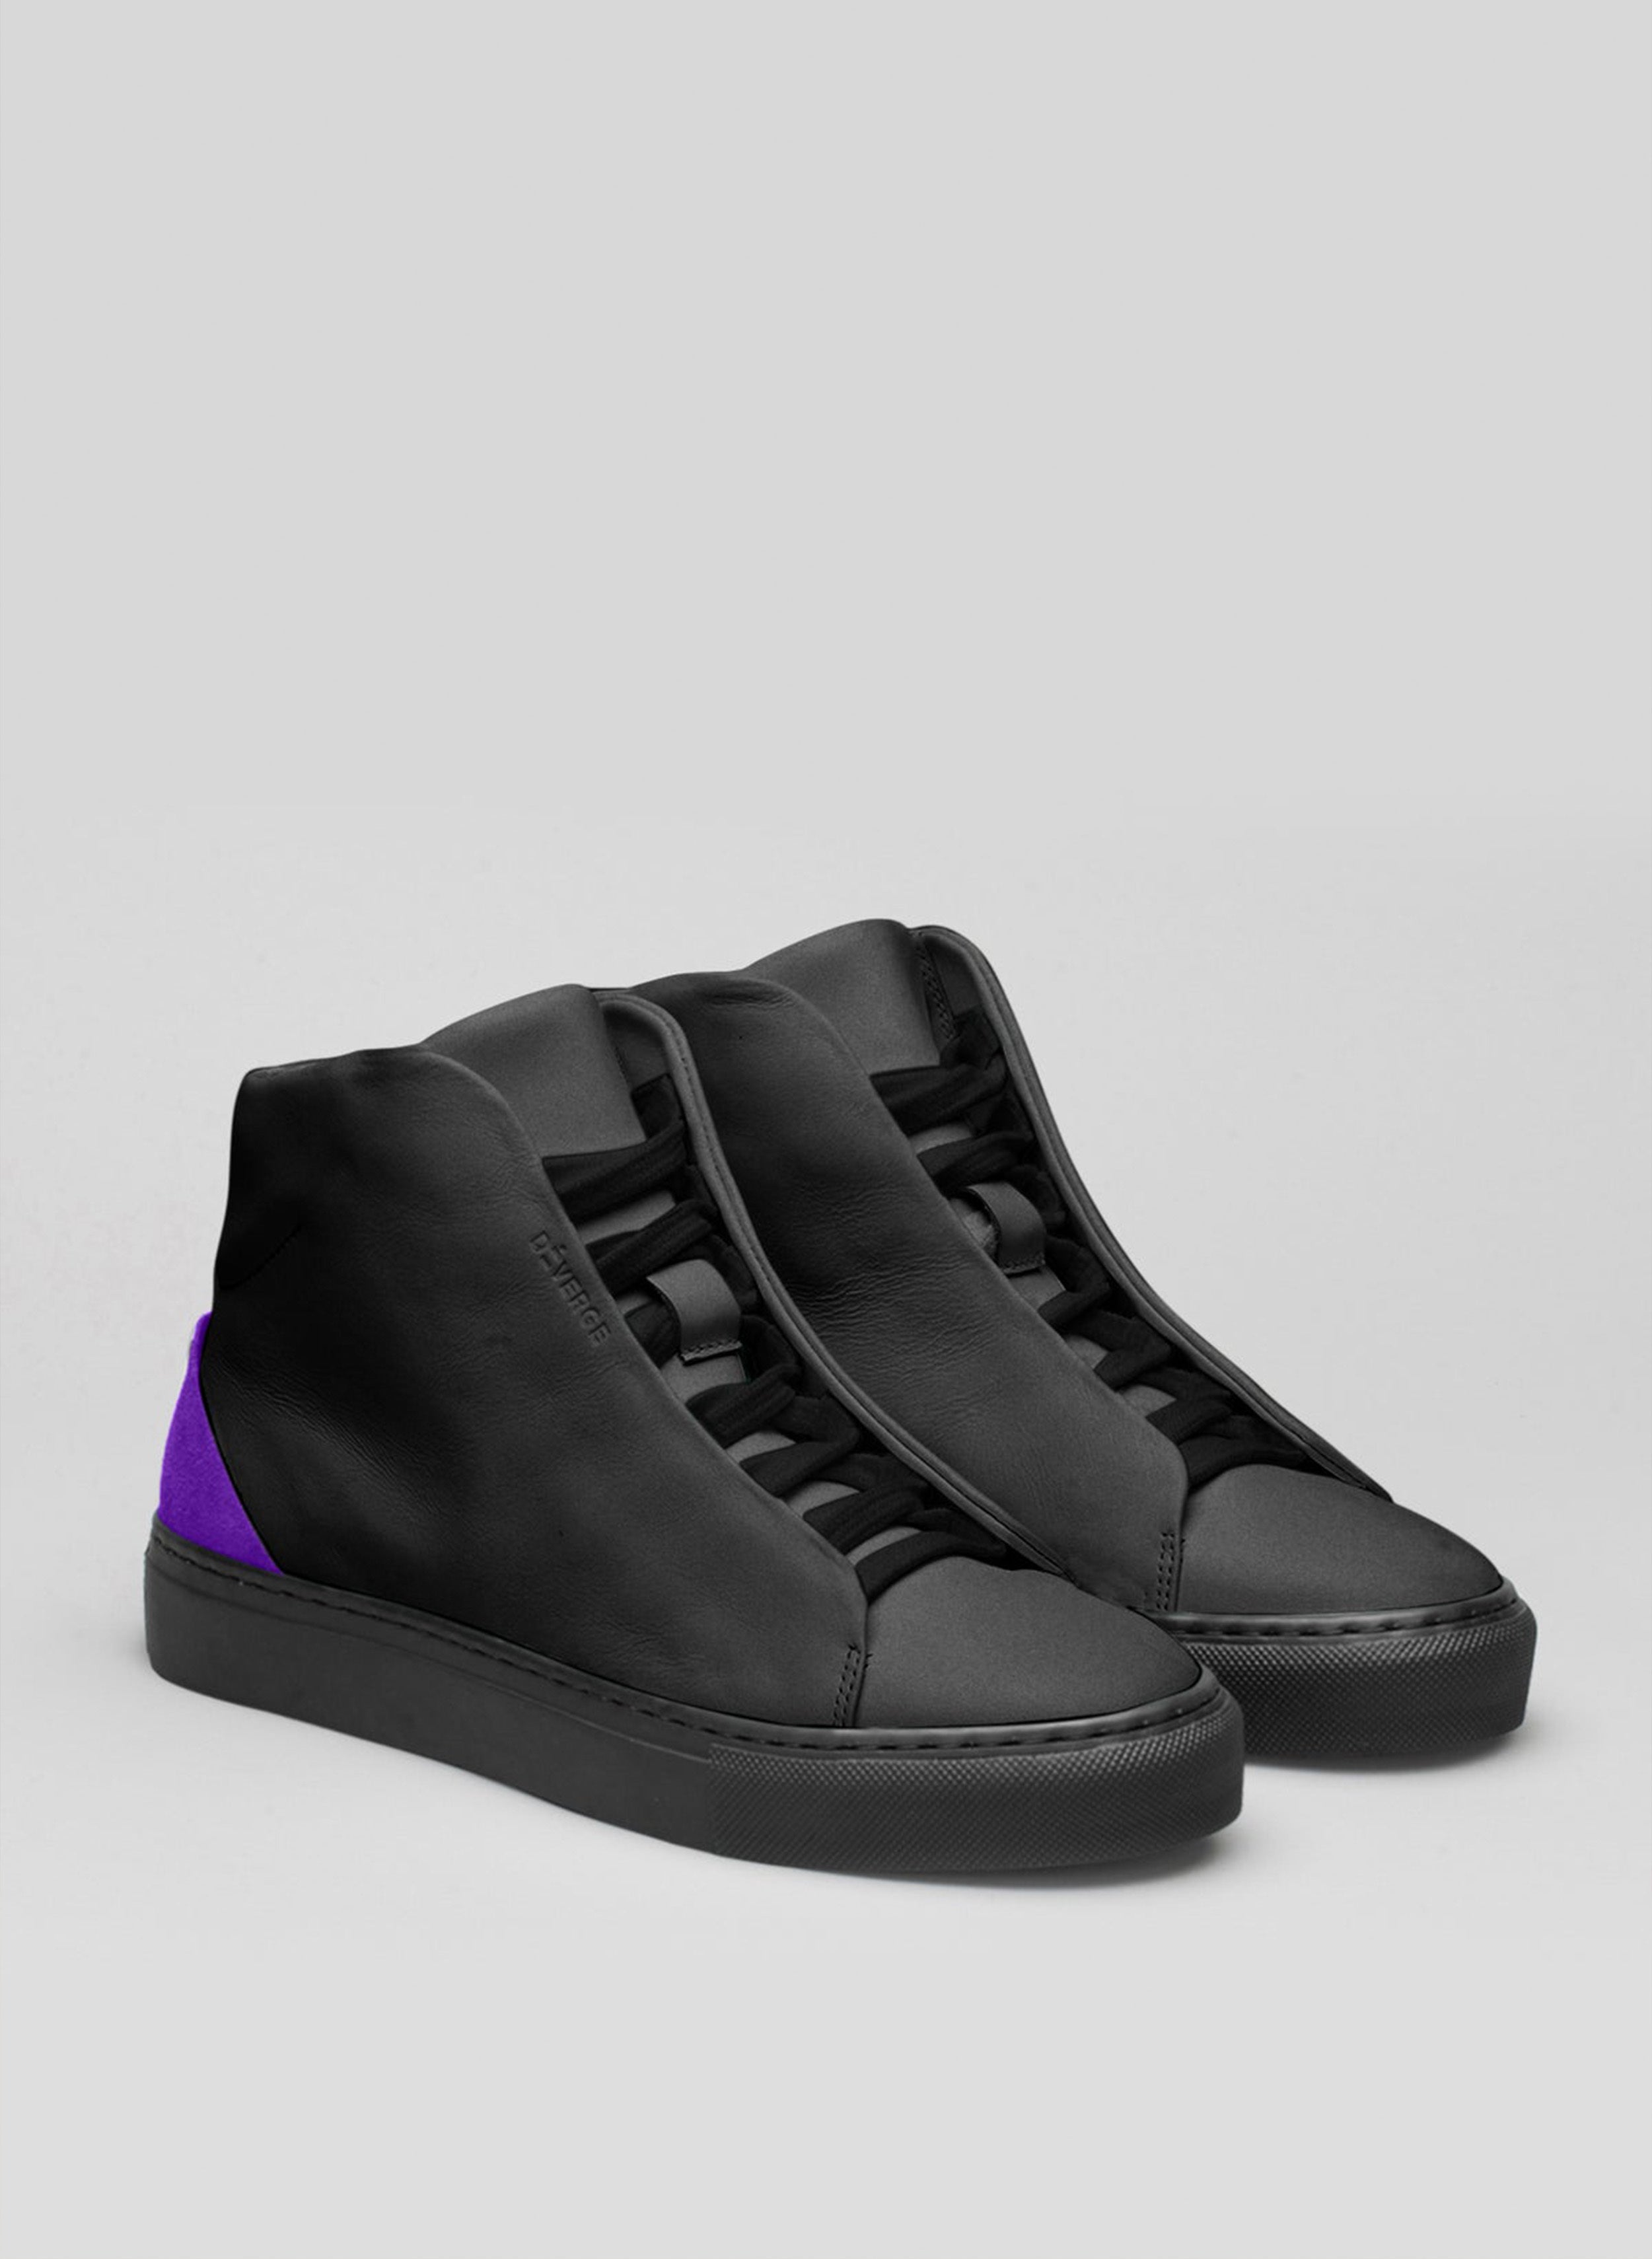 Un par de zapatillas altas negras y moradas sneakers, luciendo zapatos personalizados de Diverge.